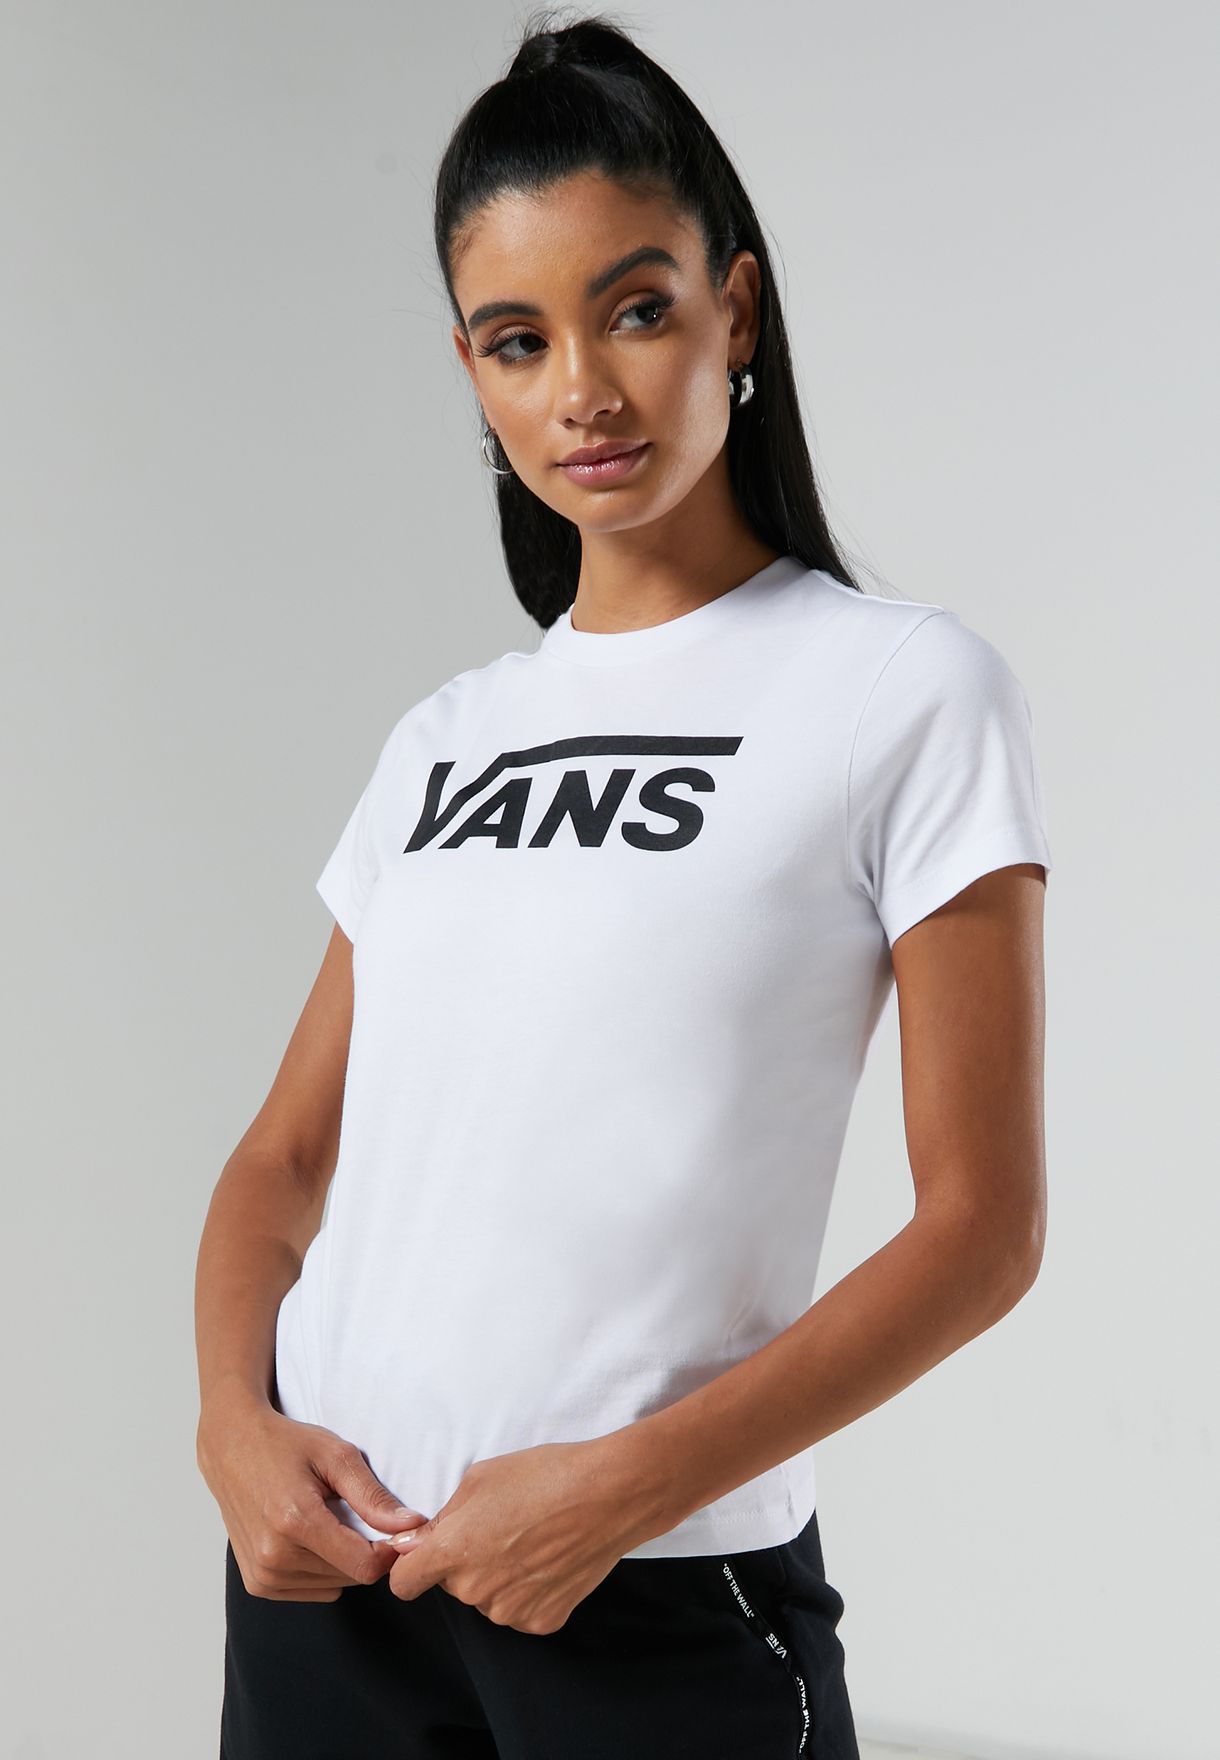 vans white shirt womens